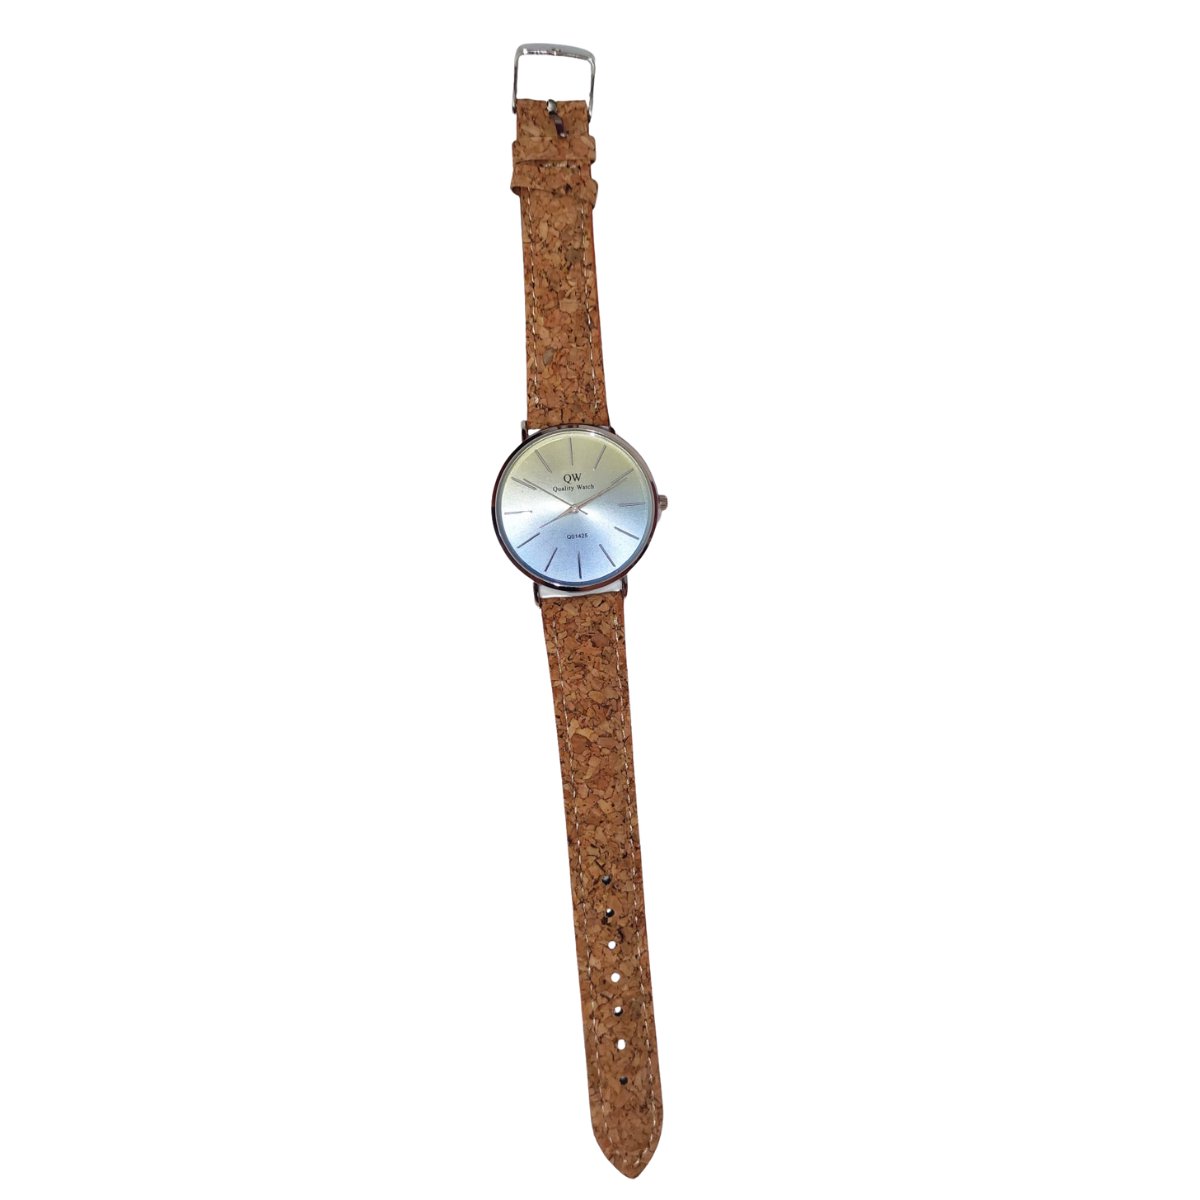 Elegant horloge met kurken banden - Voor Heren - Bruin - 44mm